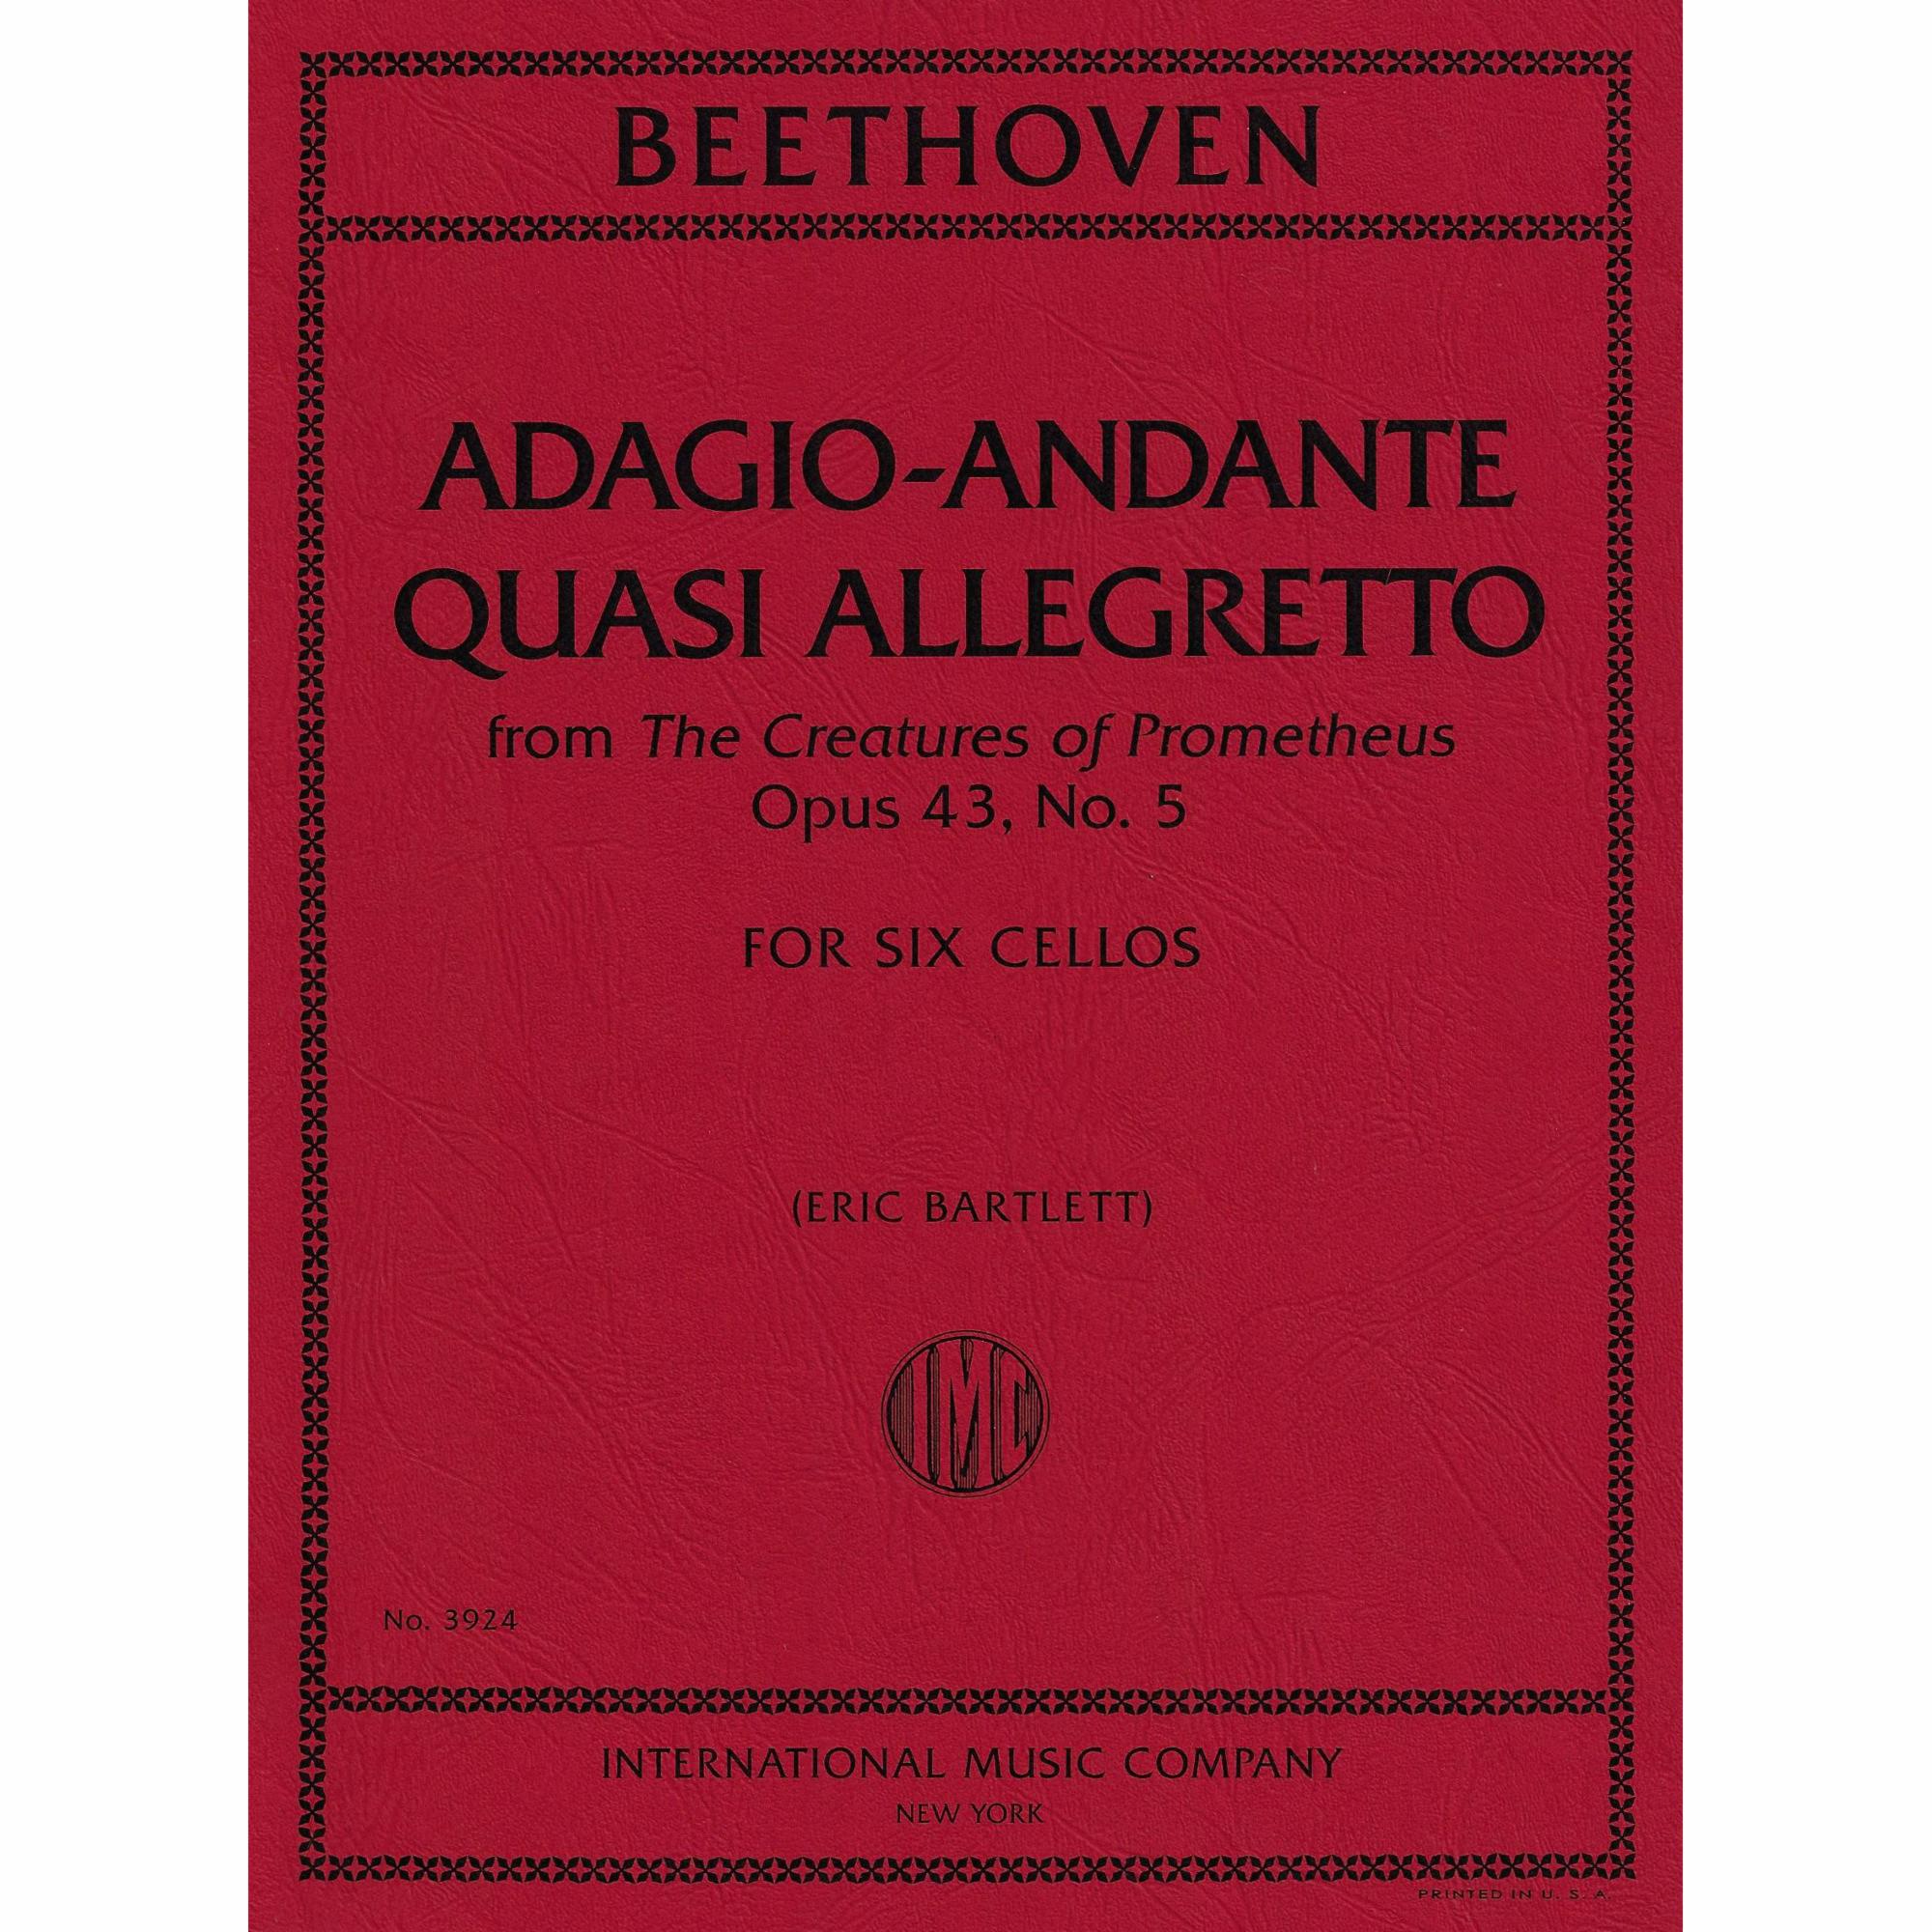 Beethoven -- Adagio-Andante quasi allegretto, from Creatures of Prometheus, Op. 43 for Six Cellos